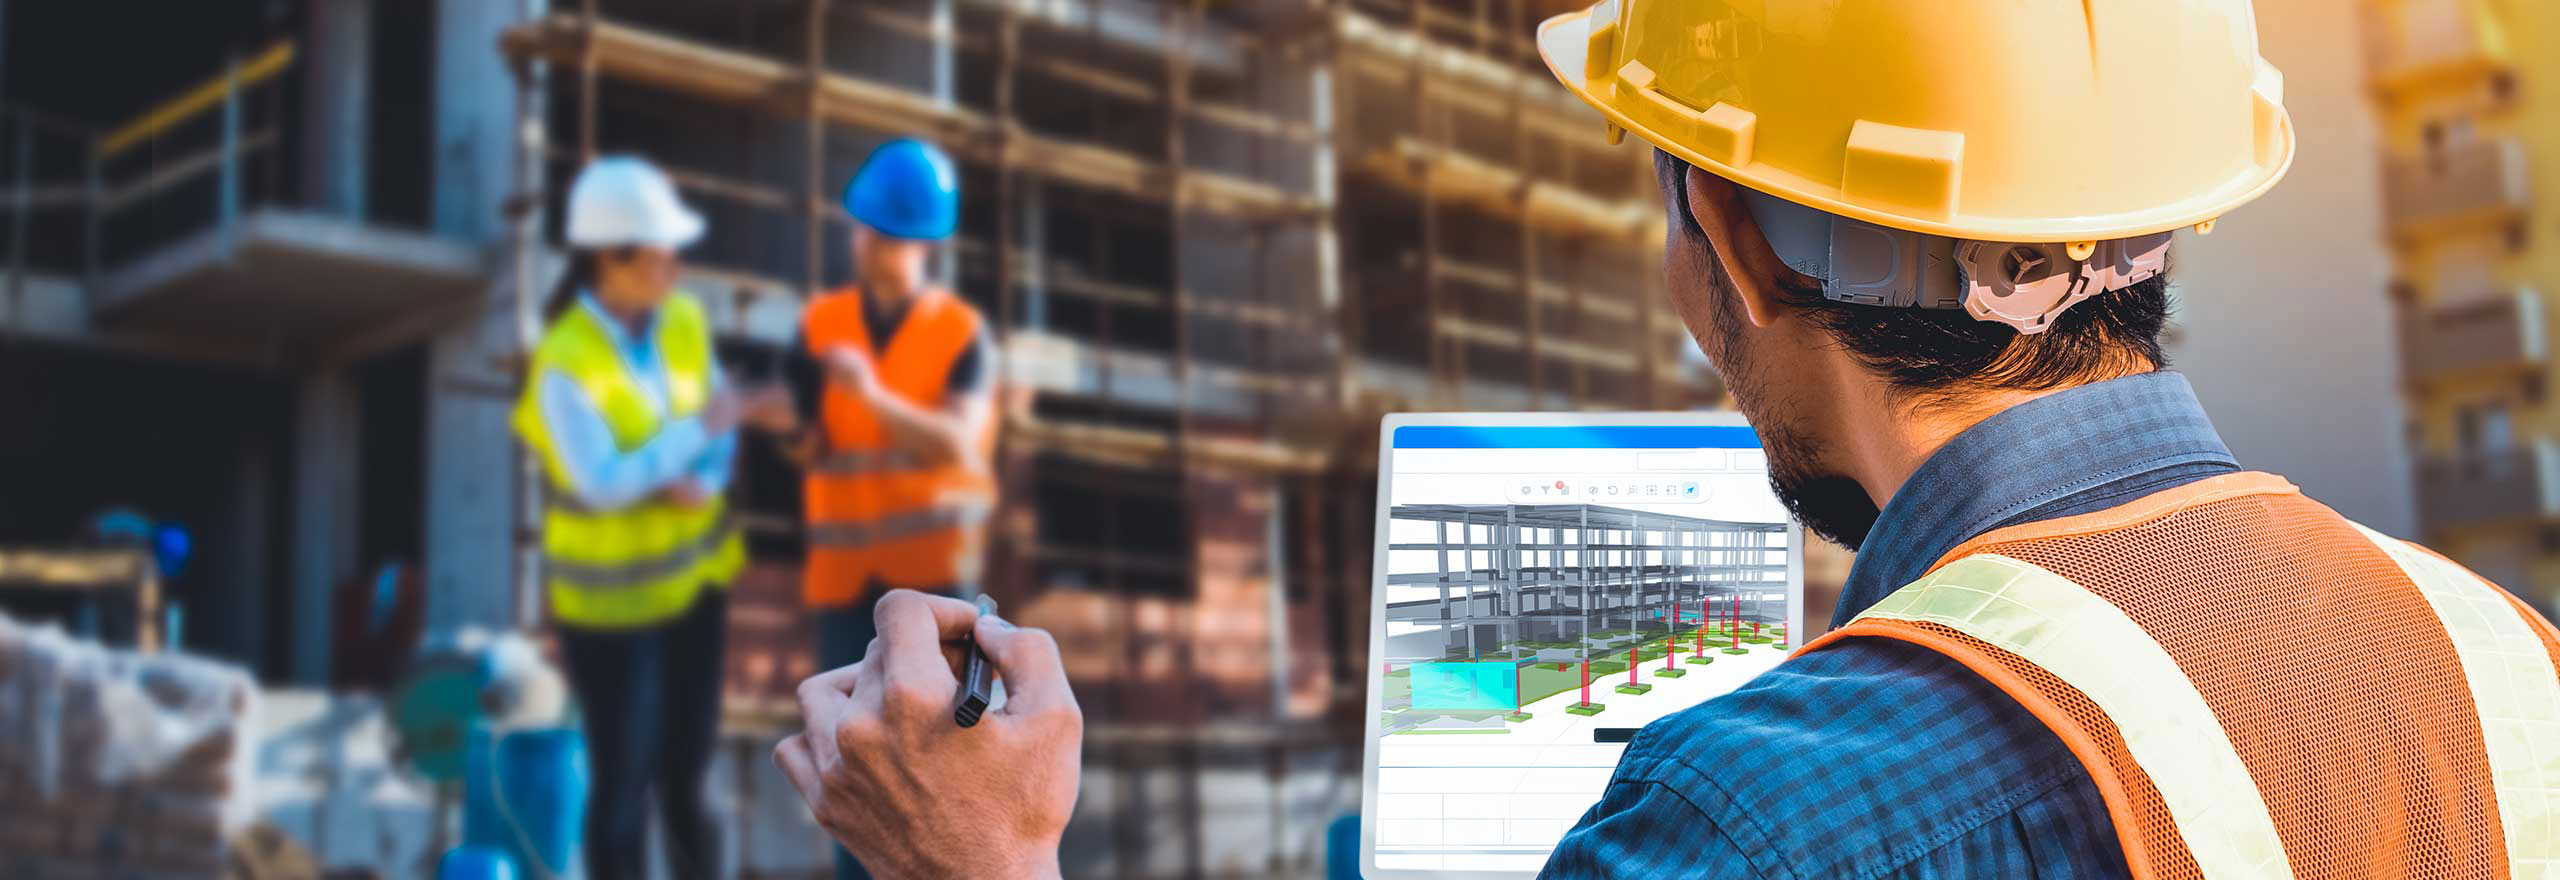 Membro de uma equipe de construção nas instalações, usando um dos programas da Hexagon em um tablet